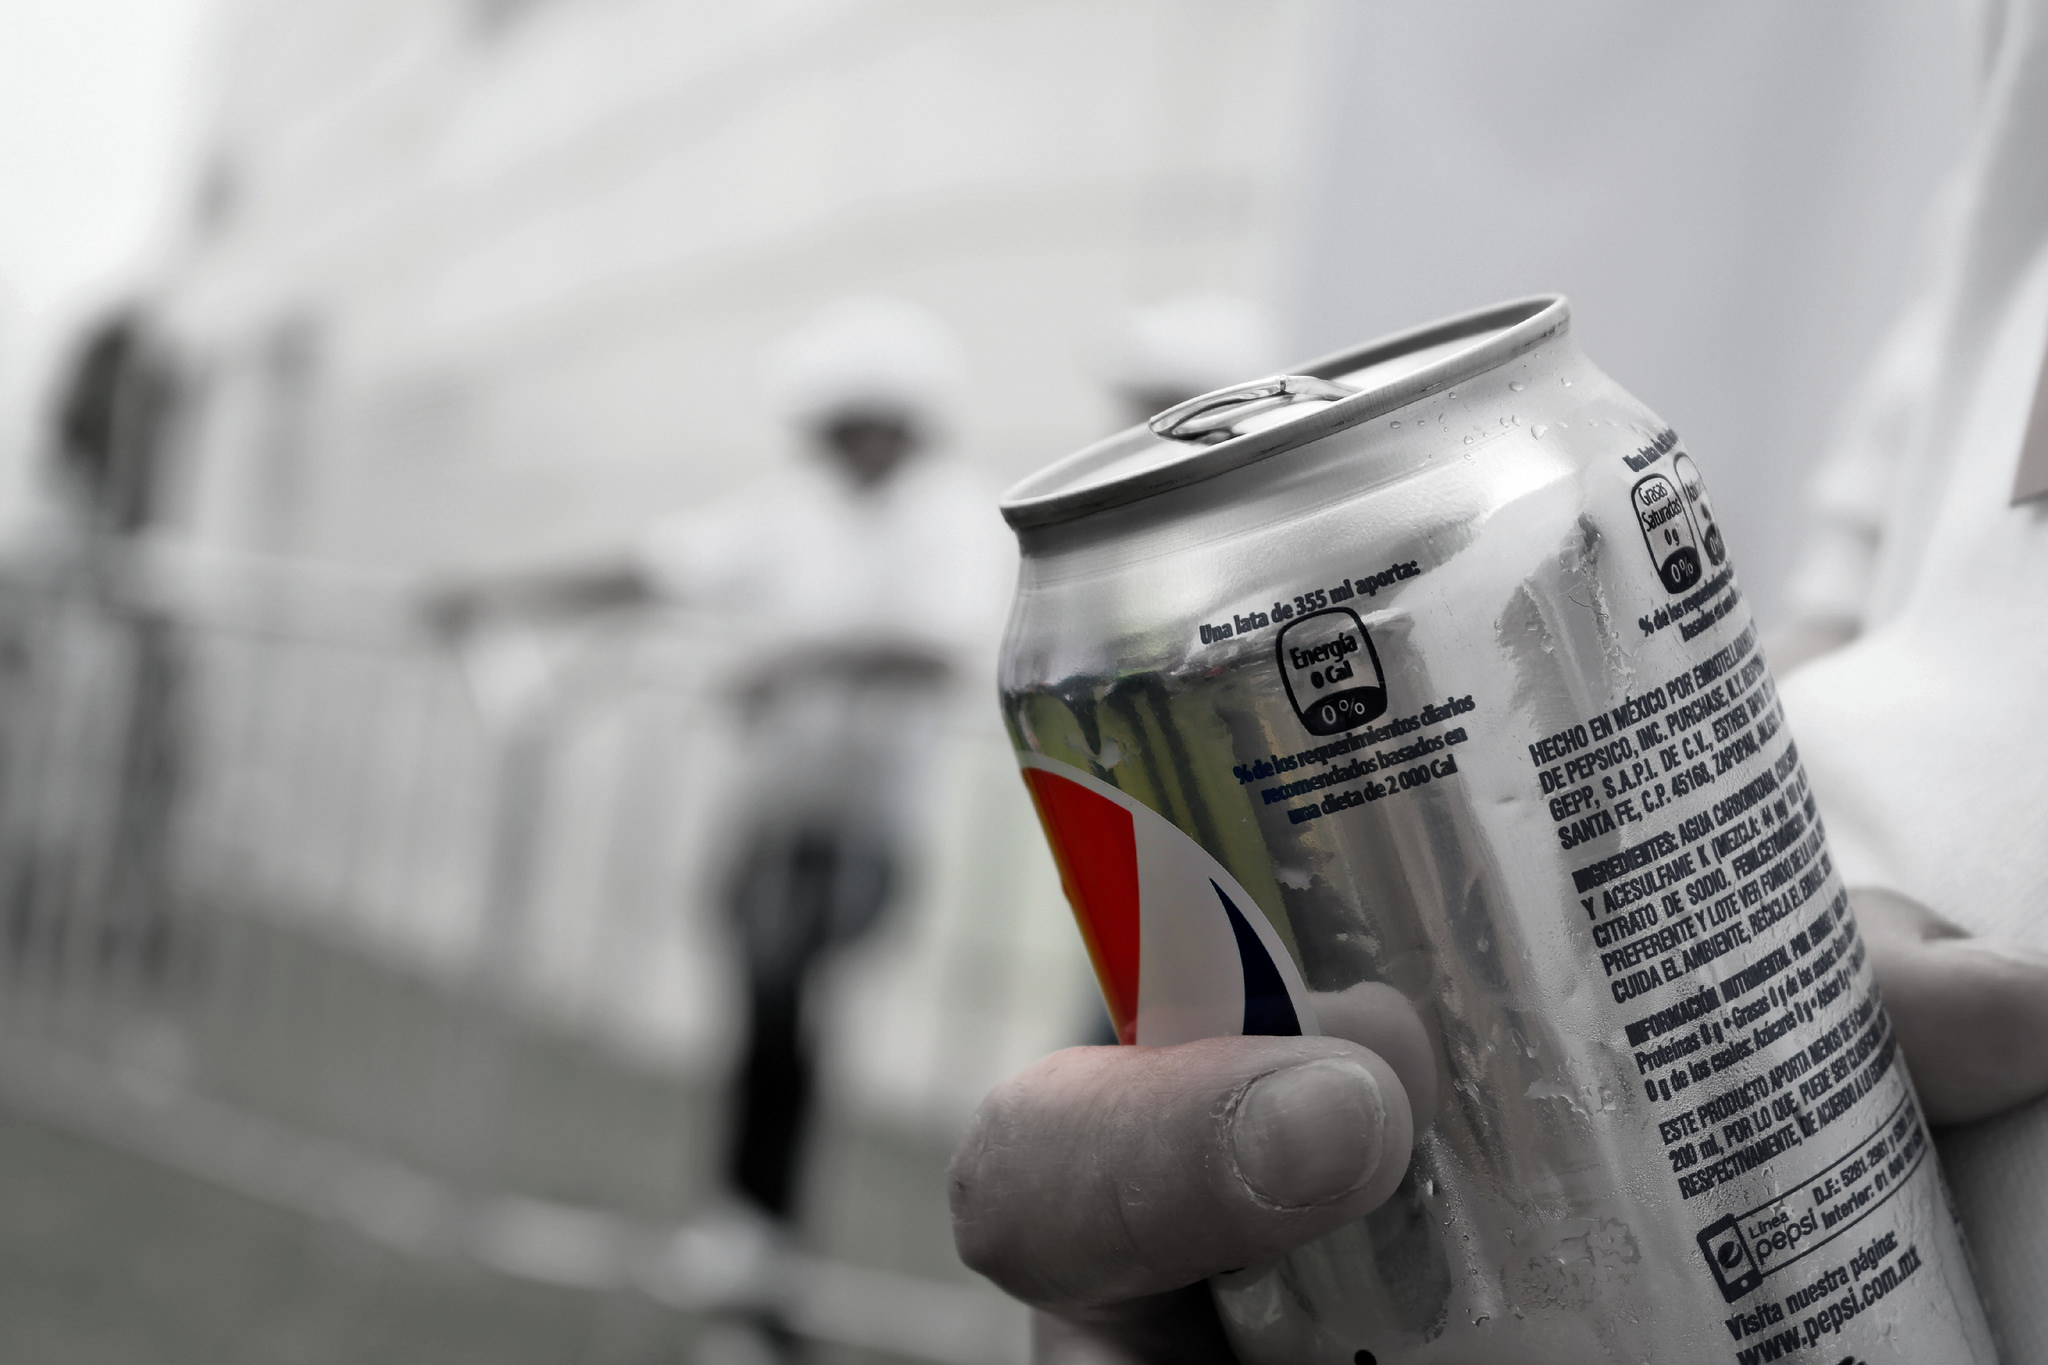 Pepsi tvrdi da je aspartam izbacila samo iz komercijalnih razloga